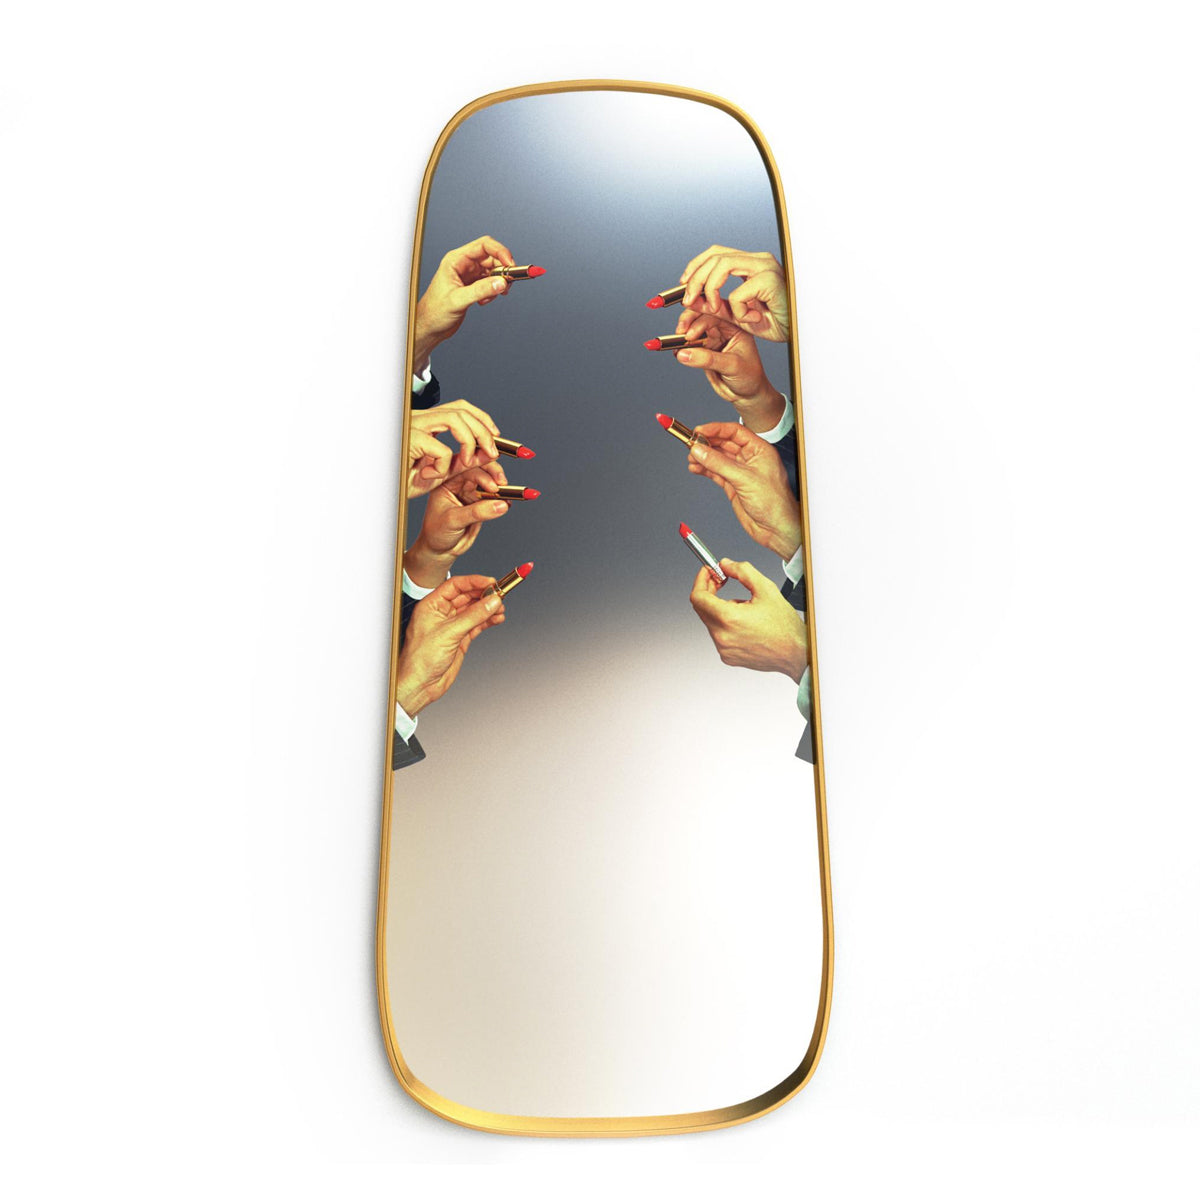 Seletti X Toiletpaper Gold Frame Tall Lipsticks Mirror